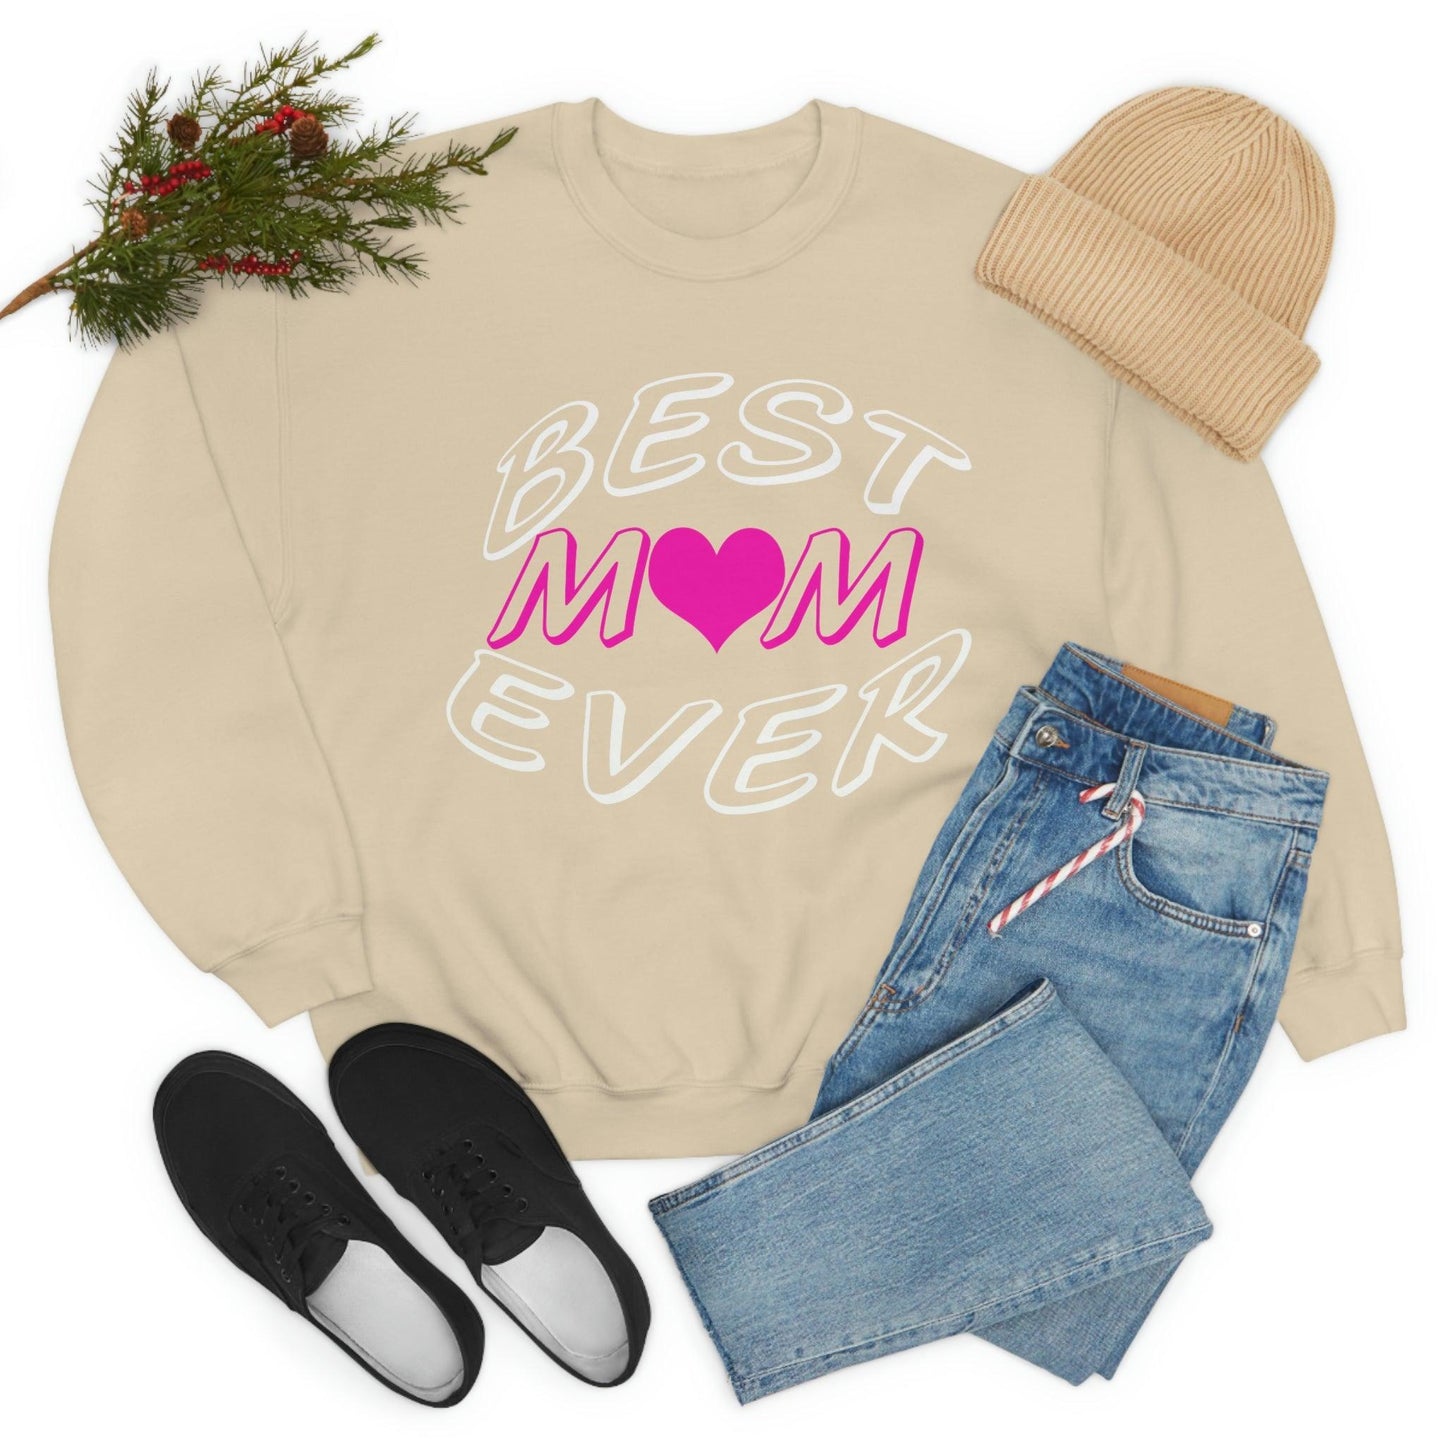 Best Mom Ever Sweatshirt